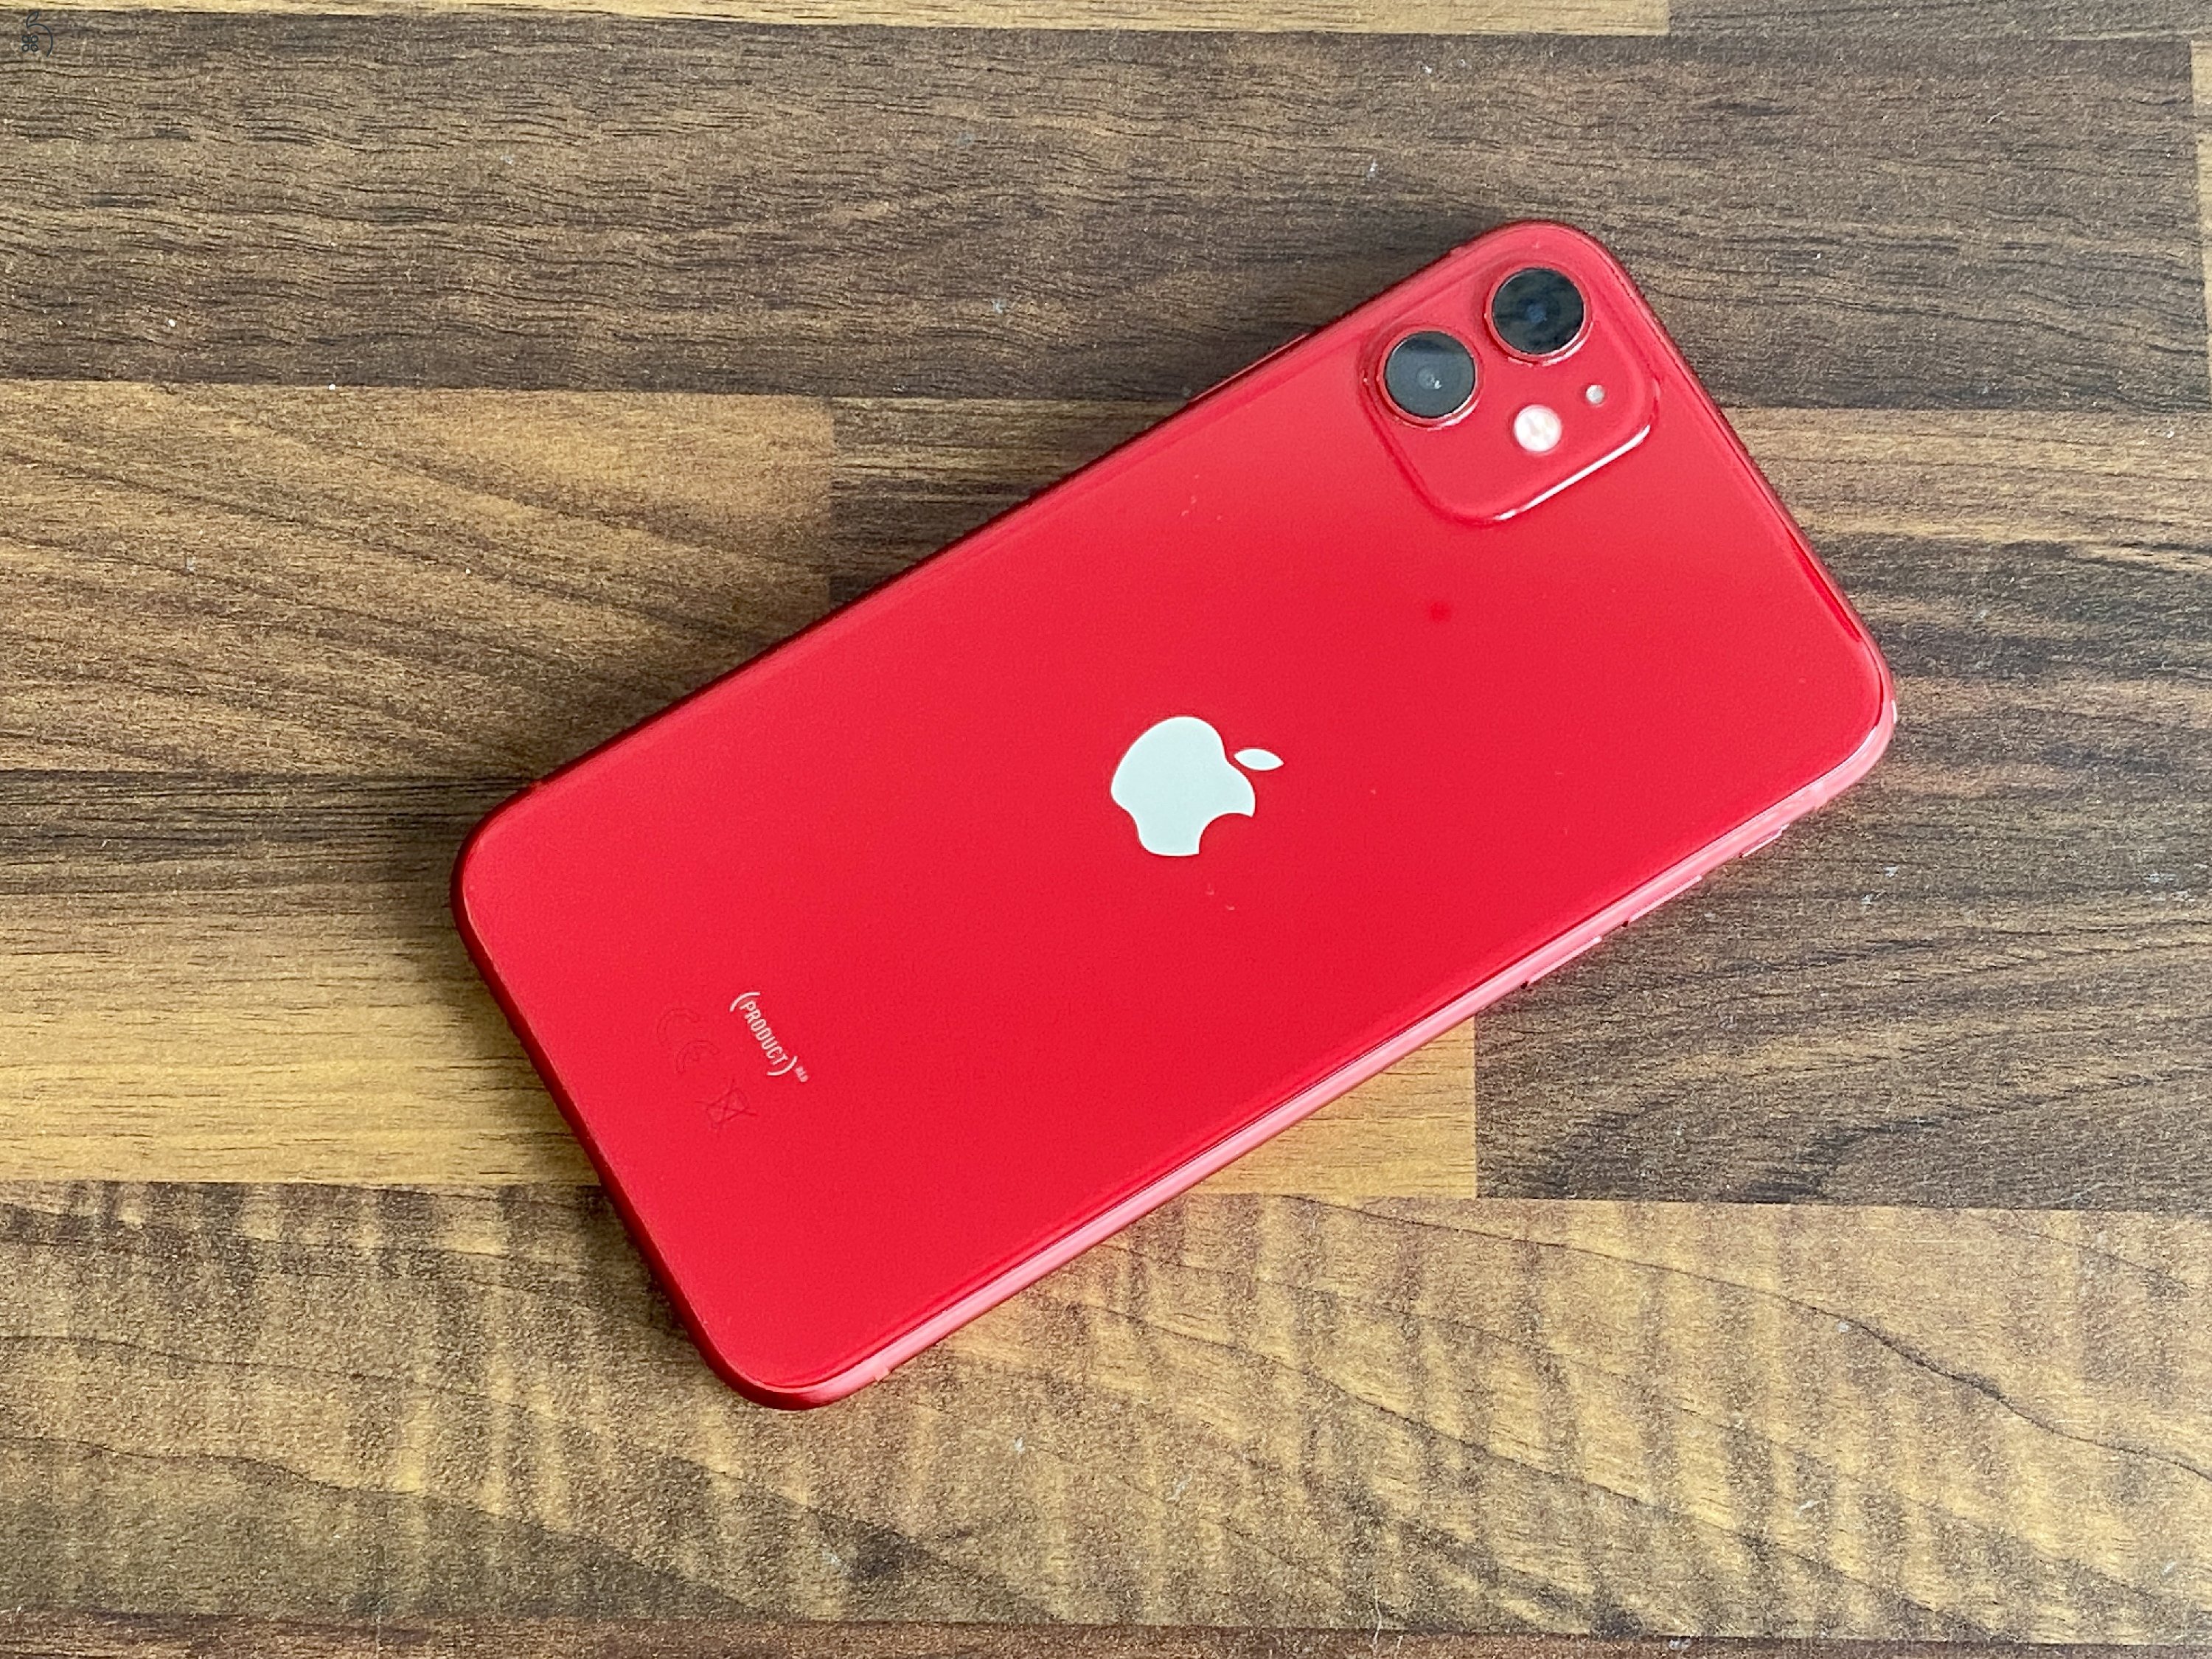 Eladó iPhone 11 64 GB PRODUCT RED 100% aksi szép állapotú - 12 HÓ GARANCIA - 1222